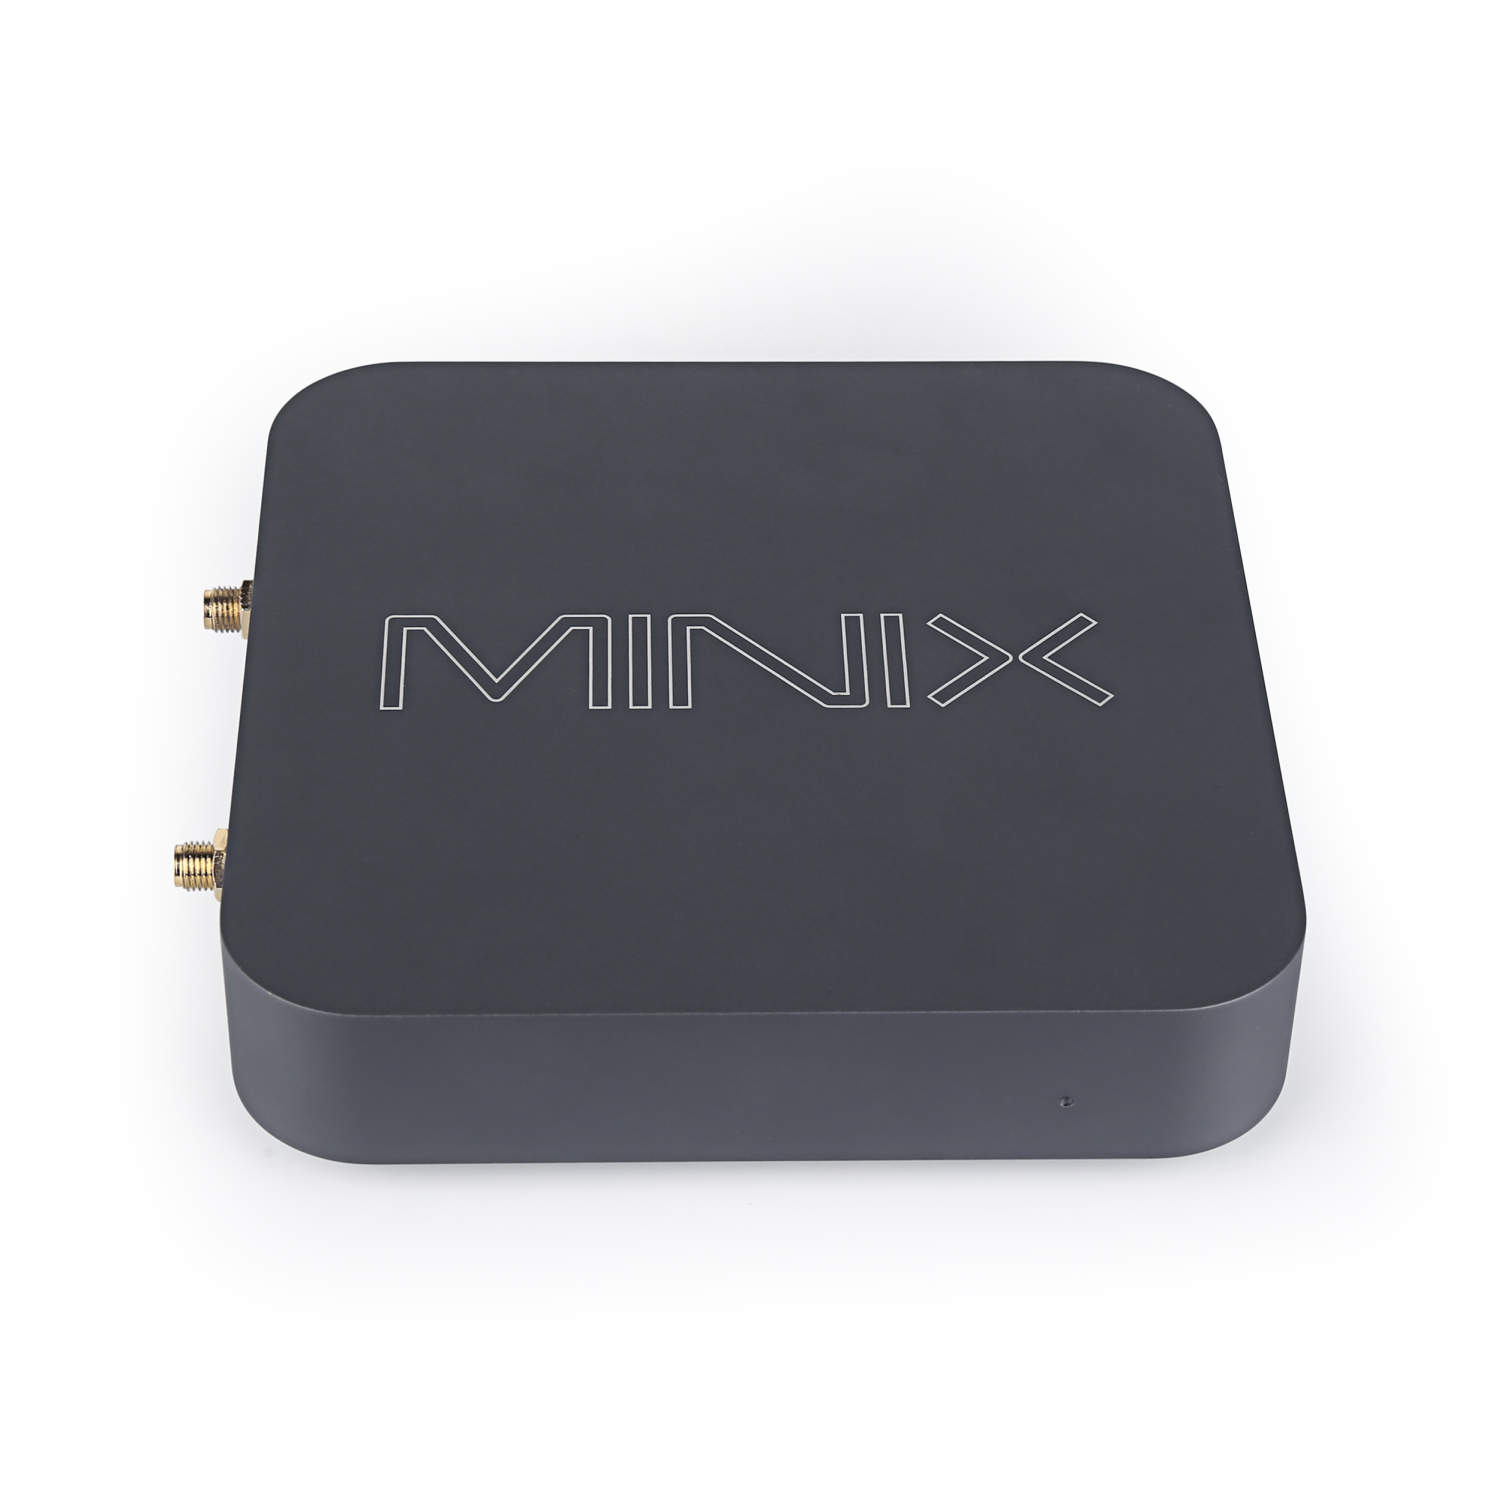 Minix con Intel Braswell: il telaio ha il caratteristico design Minix